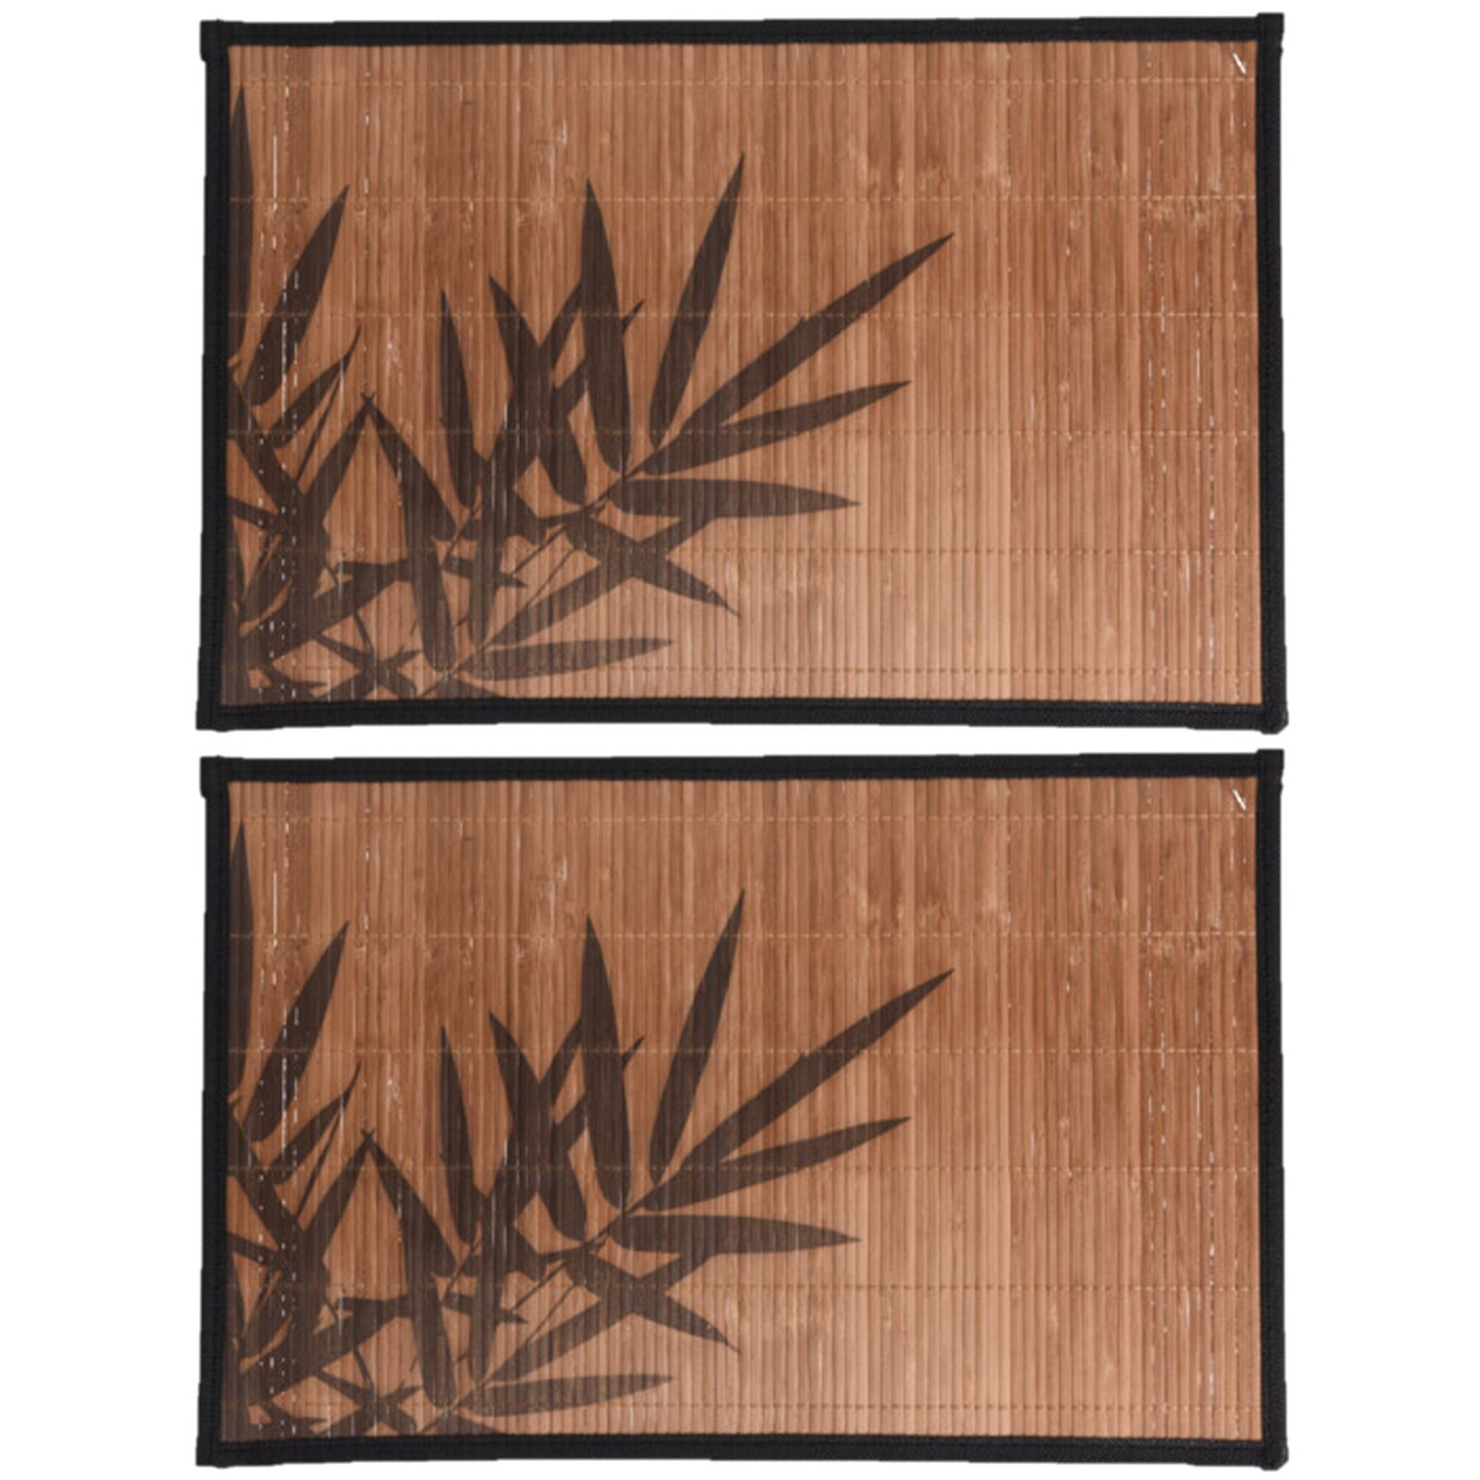 8x stuks rechthoekige placemat 30 x 45 cm bamboe bruin met zwarte bamboe print 2